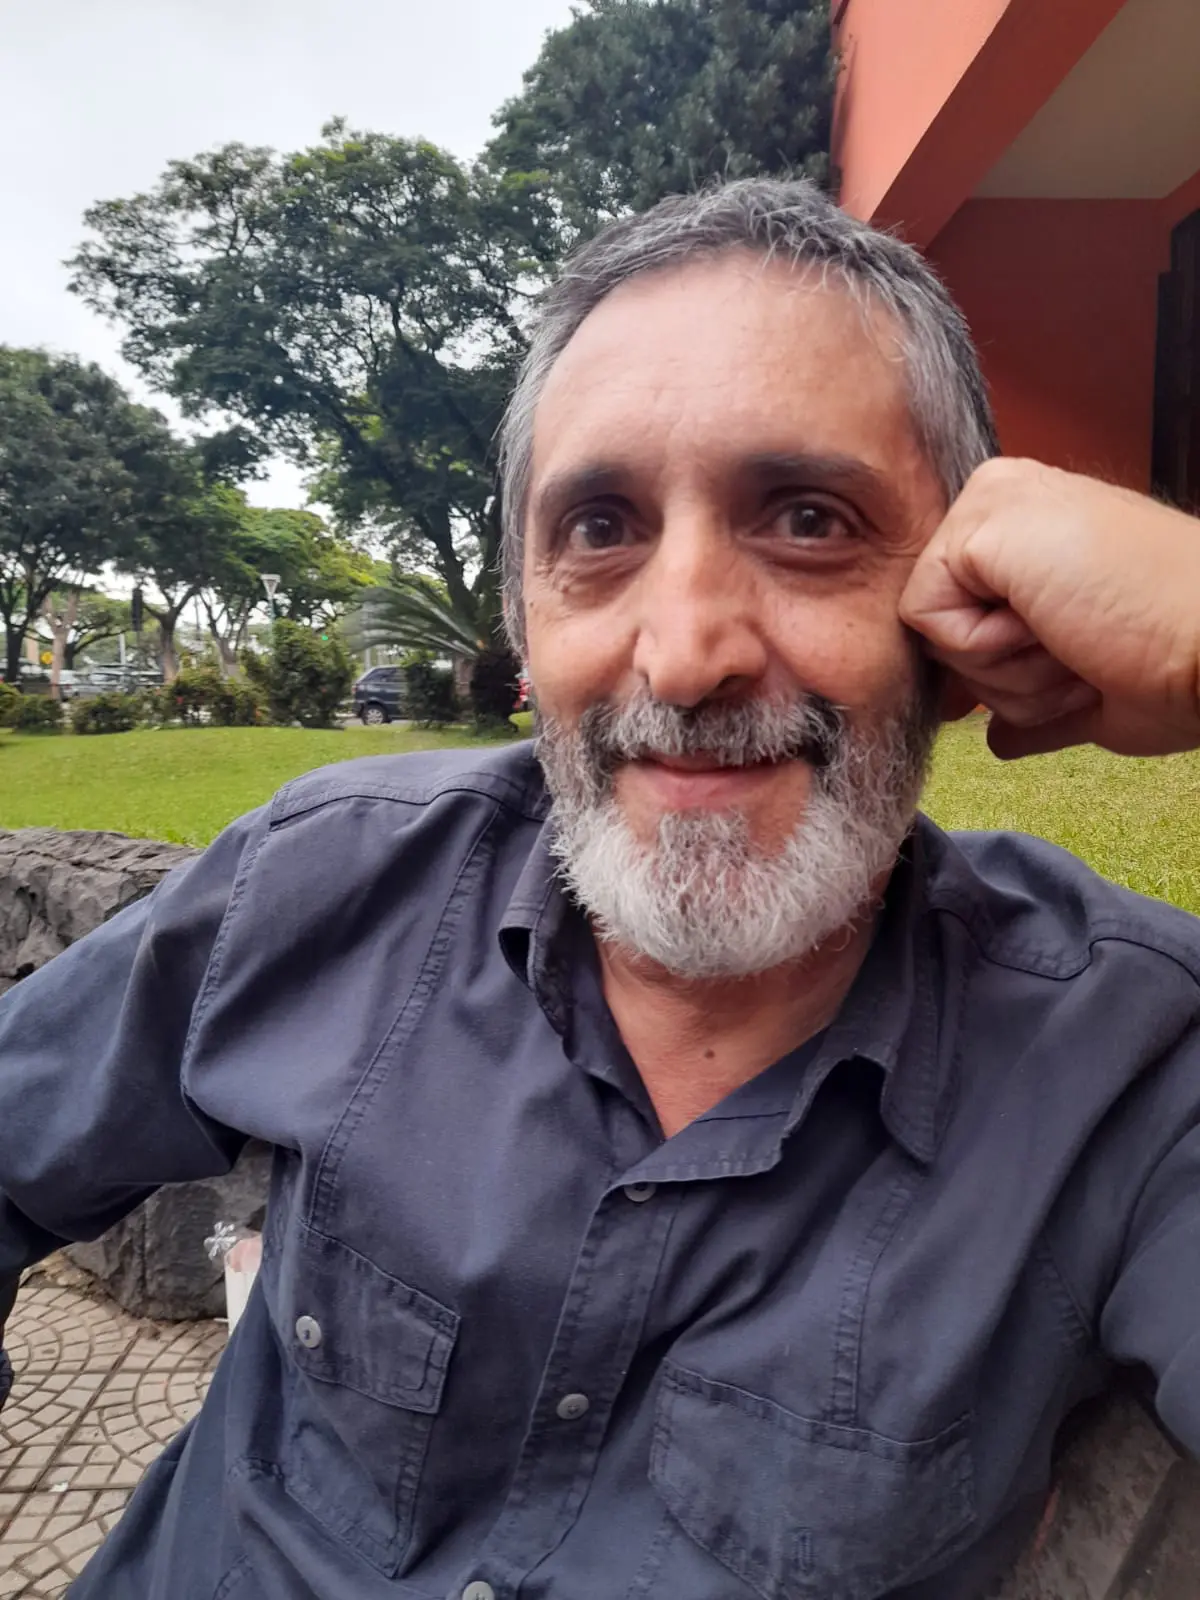 O jornalista Roberto Silva, 62, foi responsável pelo apelido que tornou Roneys conhecido e peça fundamental no processo que levou à sua identificação e prisão | Foto: Equipe GMC Online